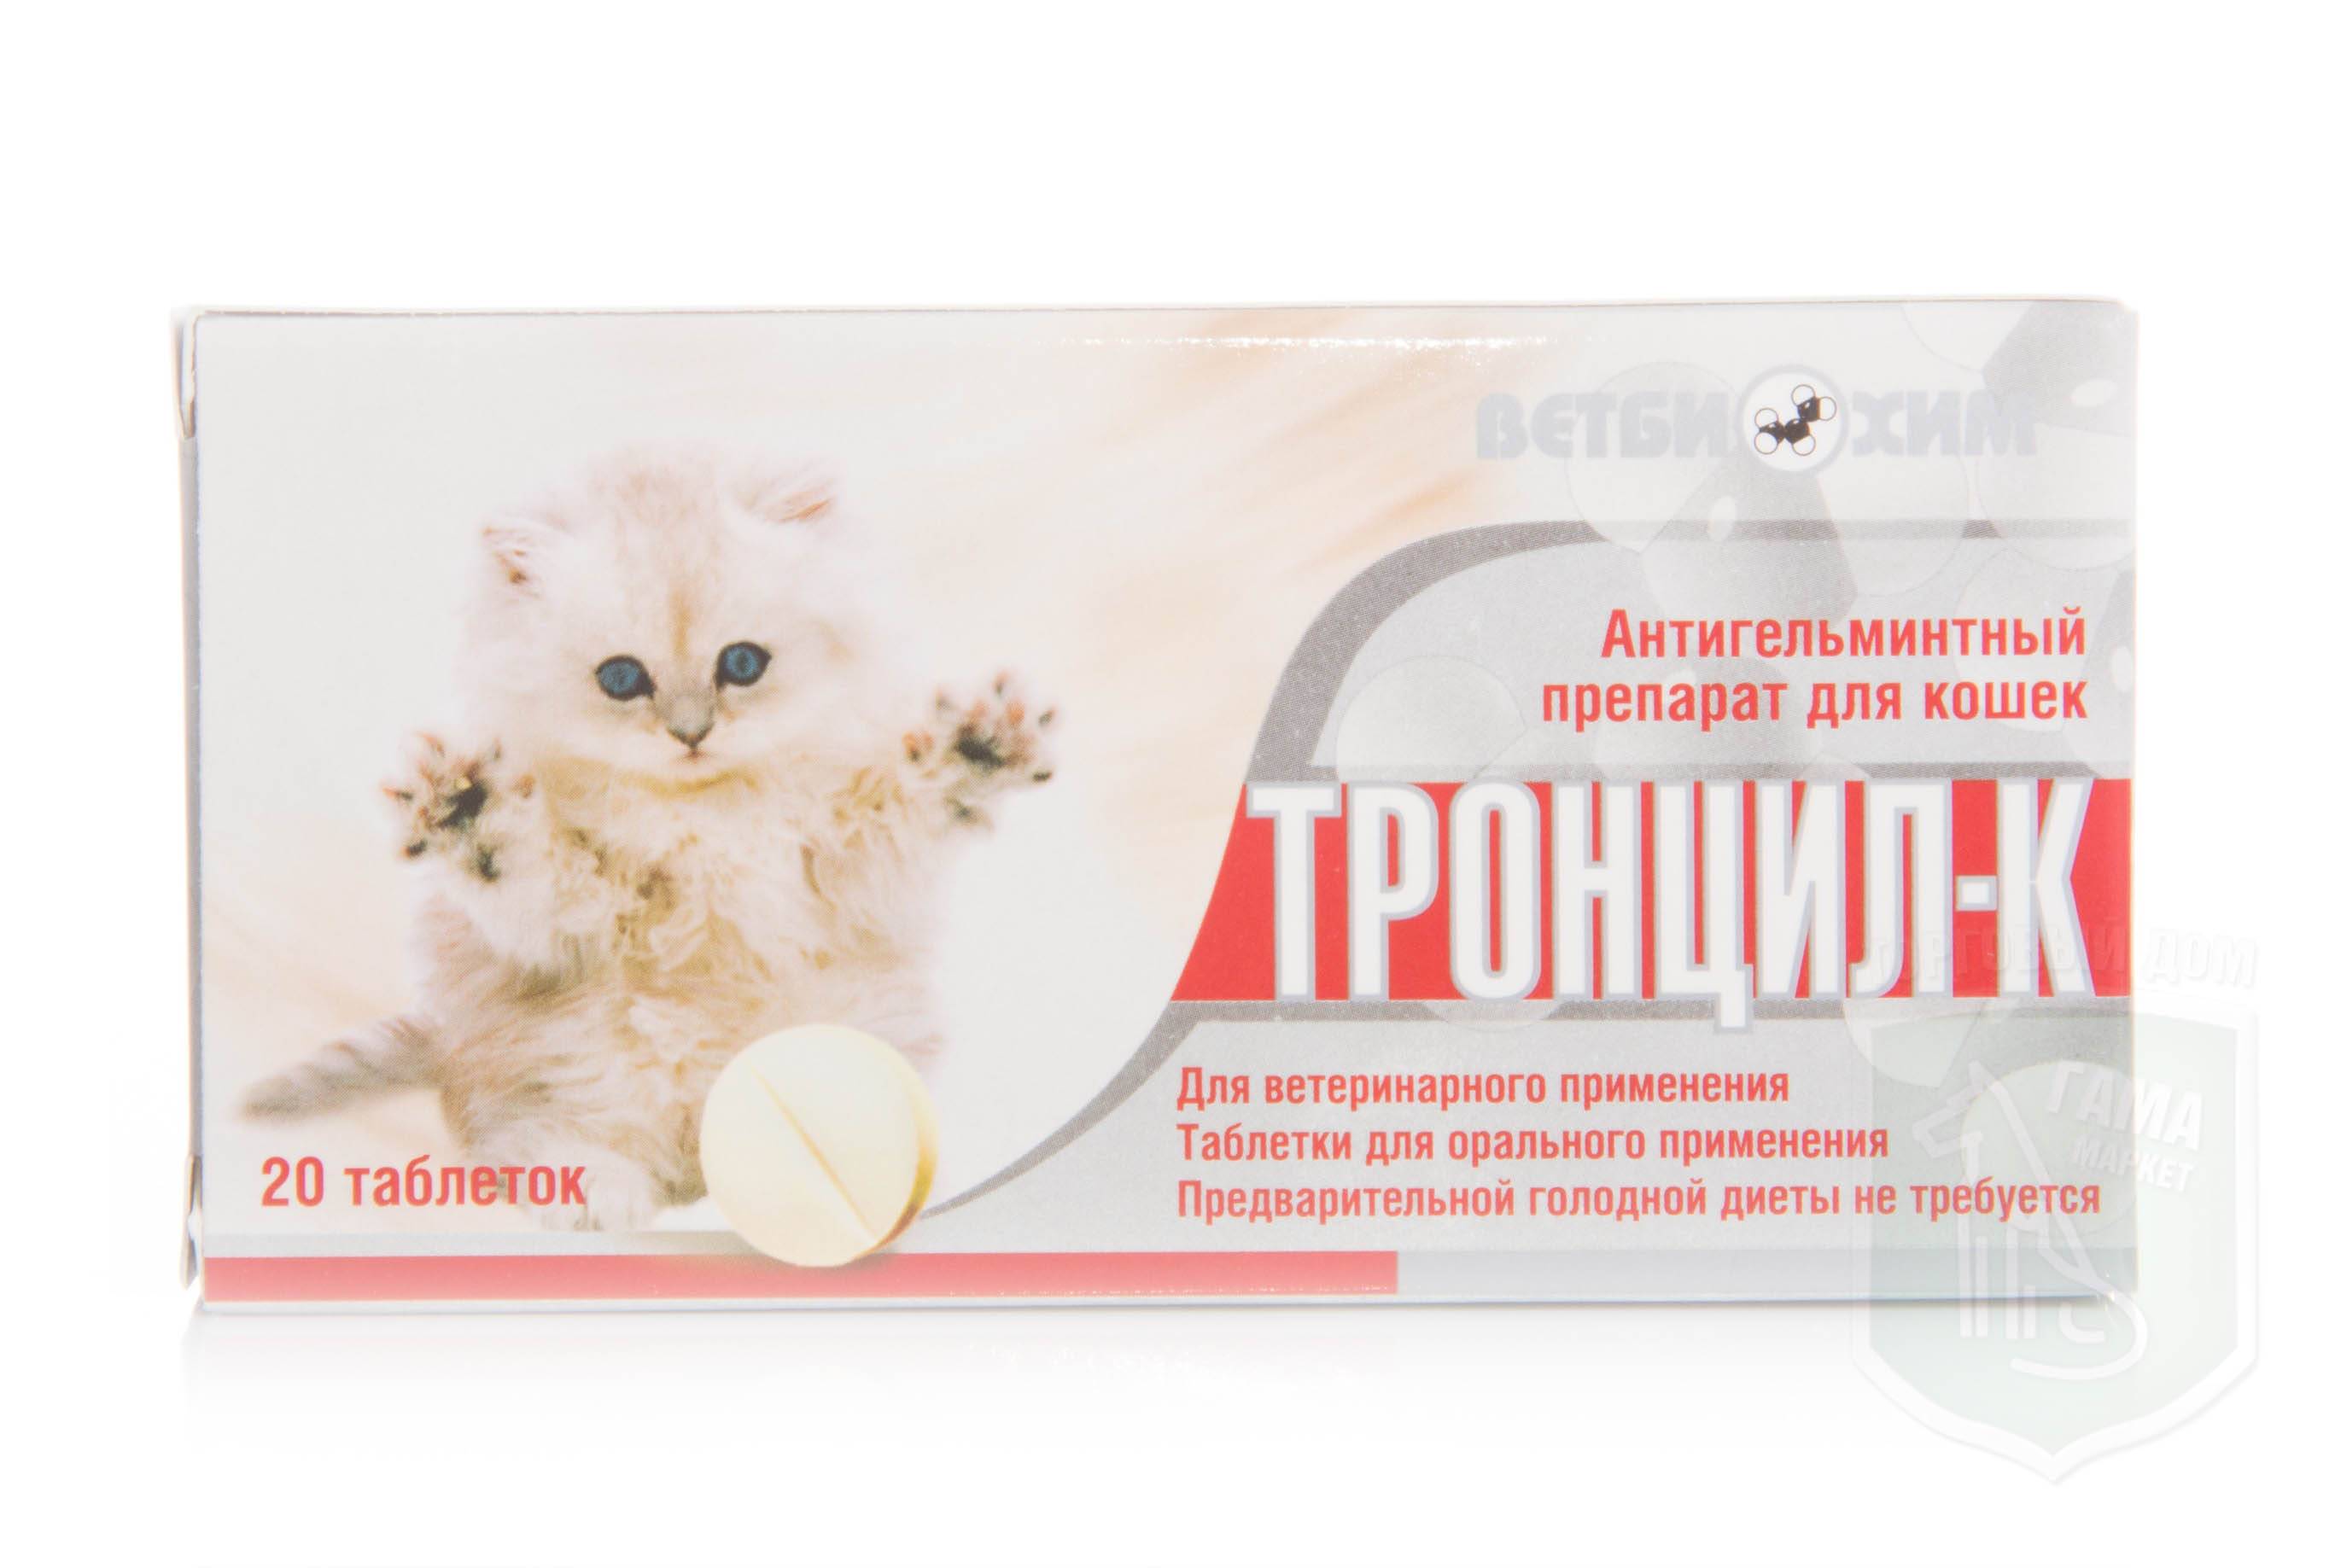 Таблетки для собак и кошек «инспектор квадро табс» от клещей и др. паразитов (инструкция)